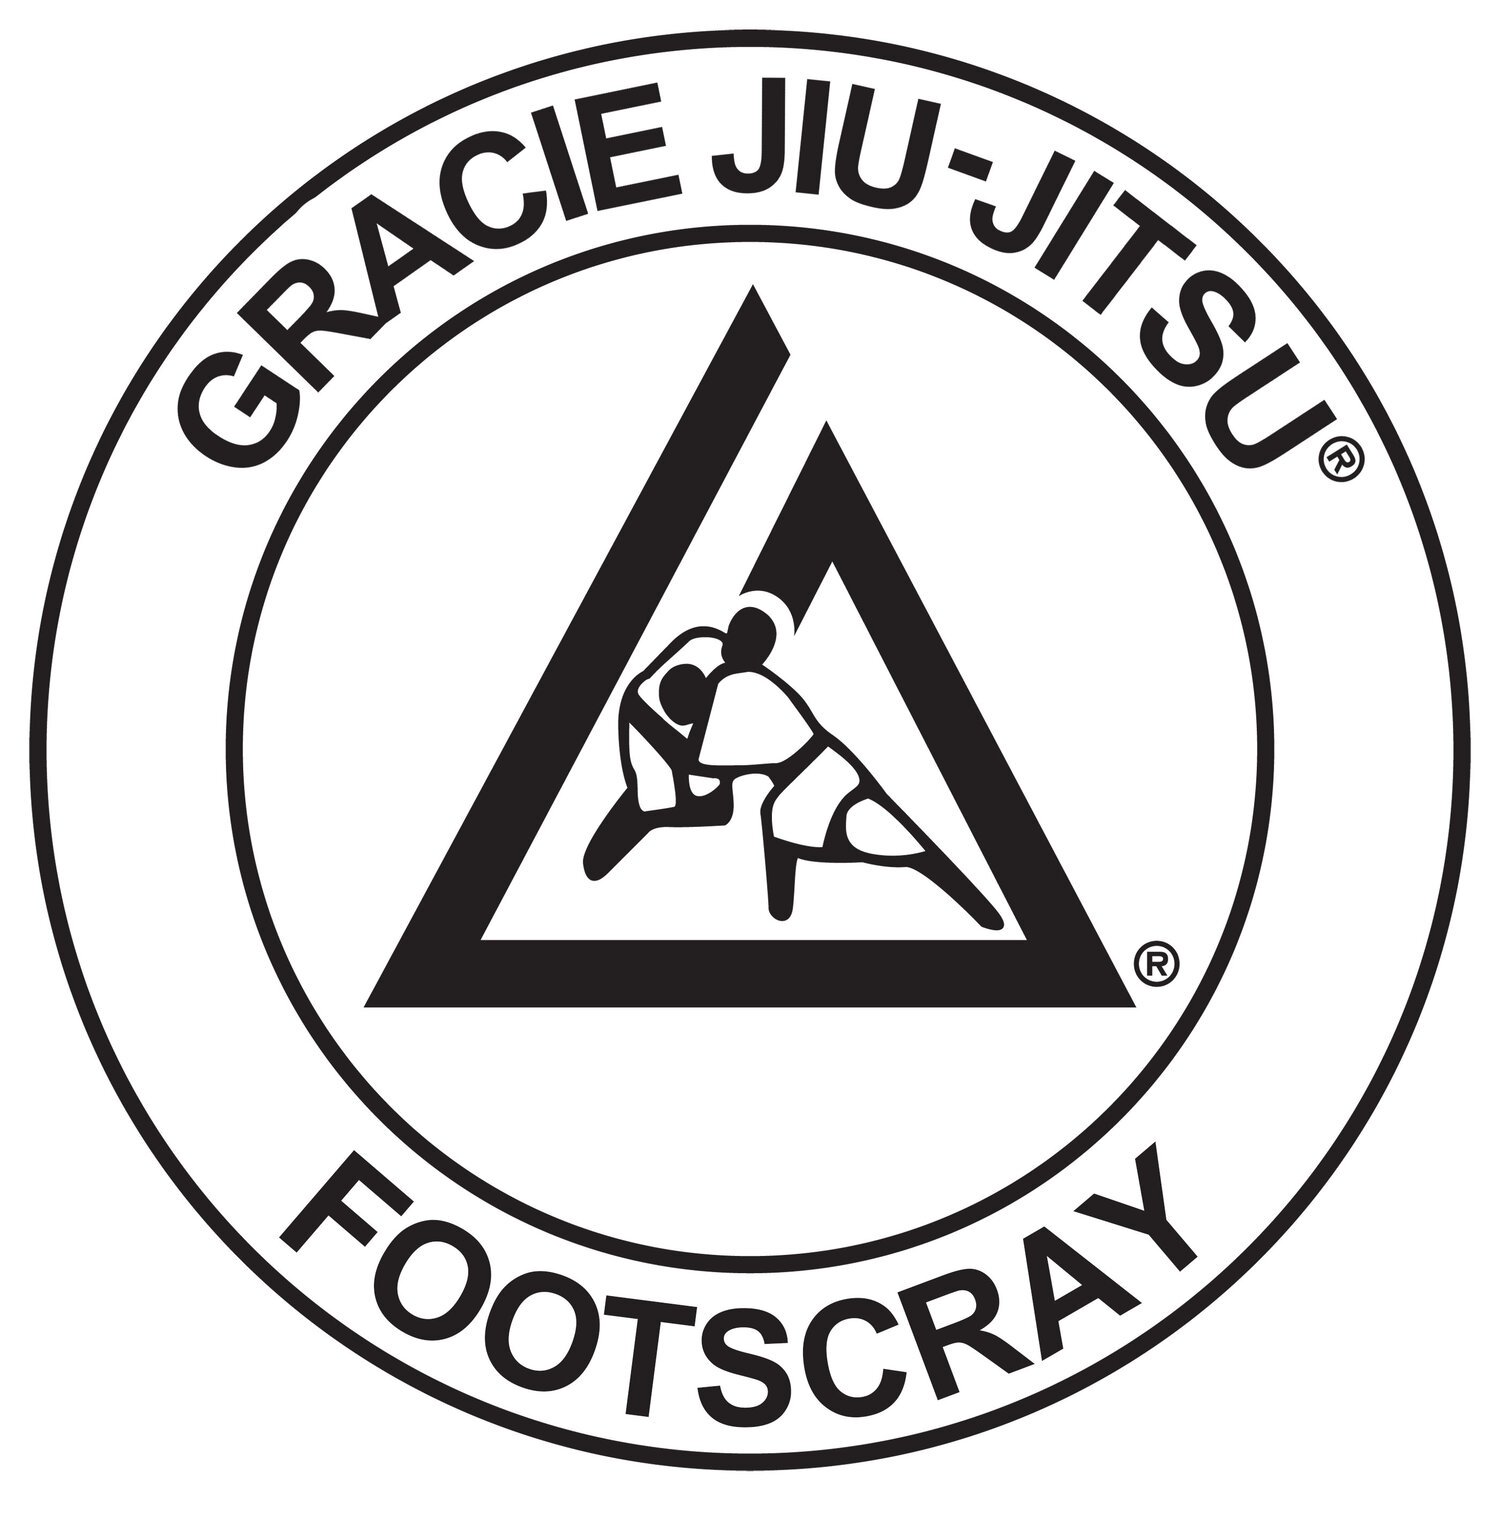 Gracie Jiu-Jitsu Footscray